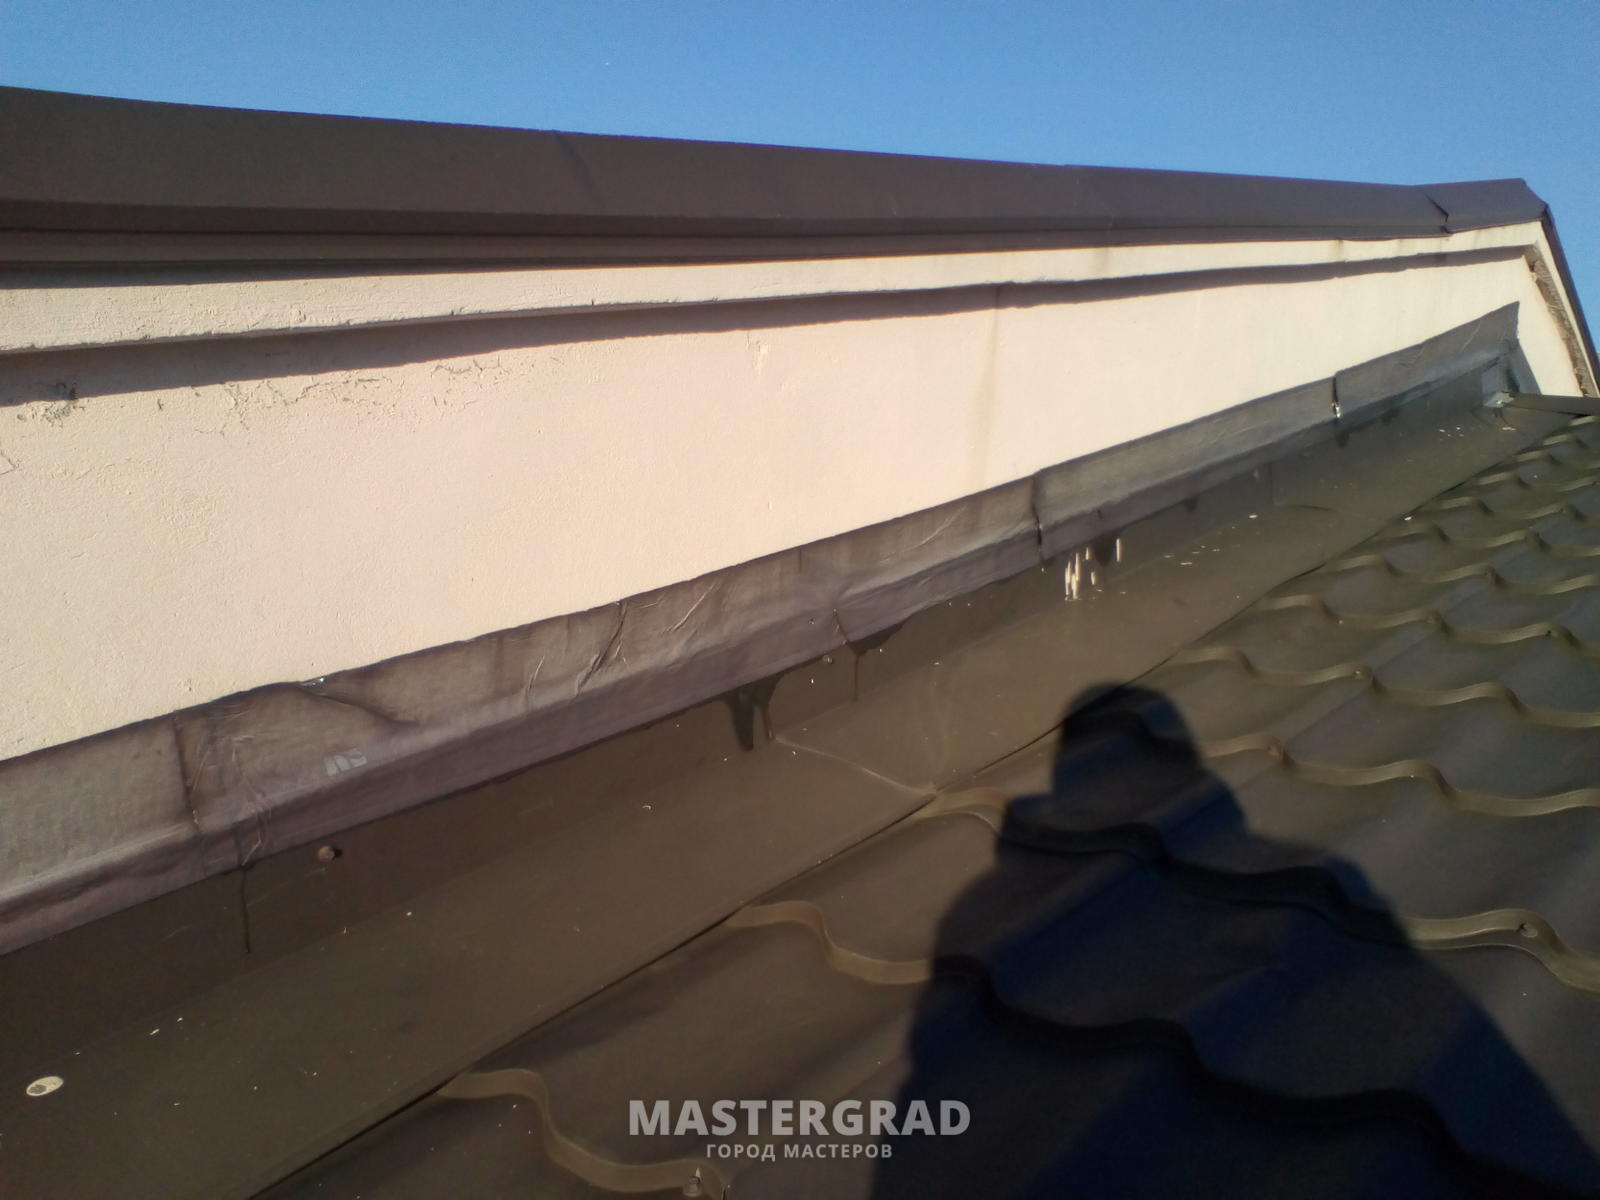  замазать швы на крыше металлического гаража - фото